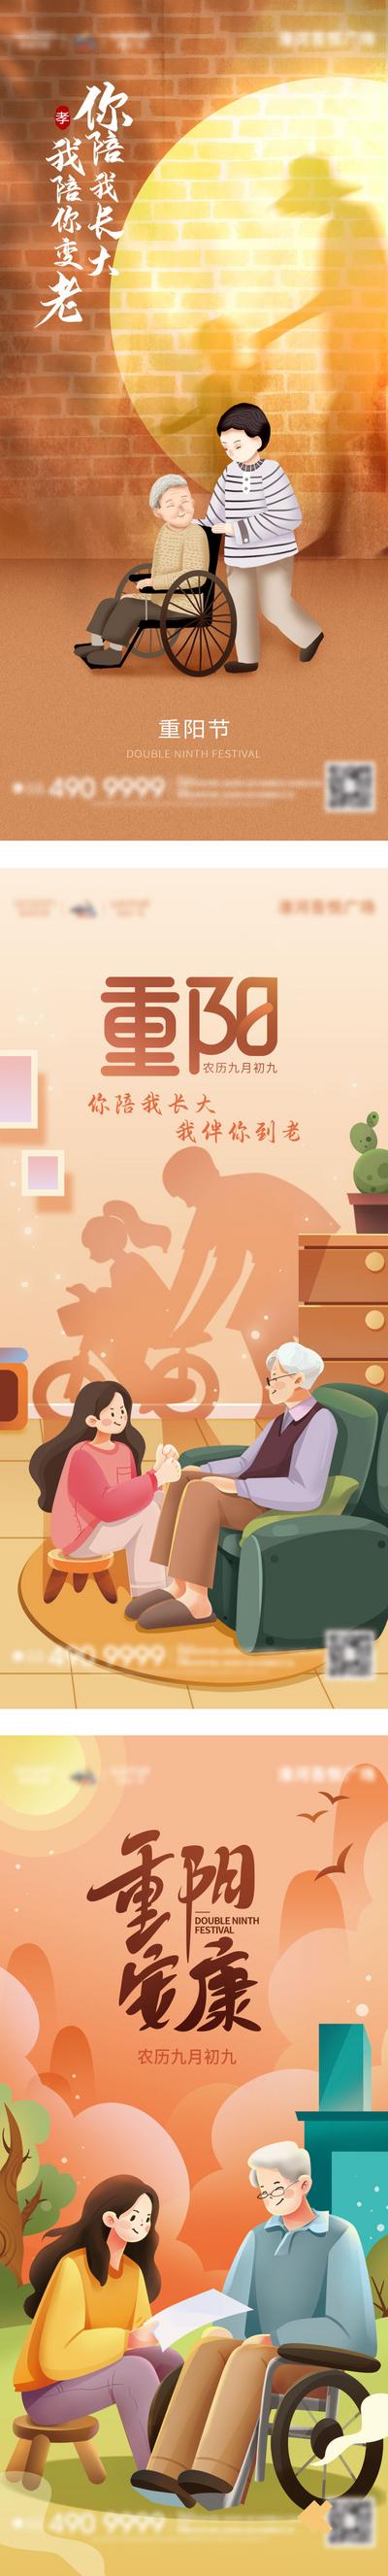 南门网 广告 海报 地产 重阳节 节日 系列 插画 推车 创意